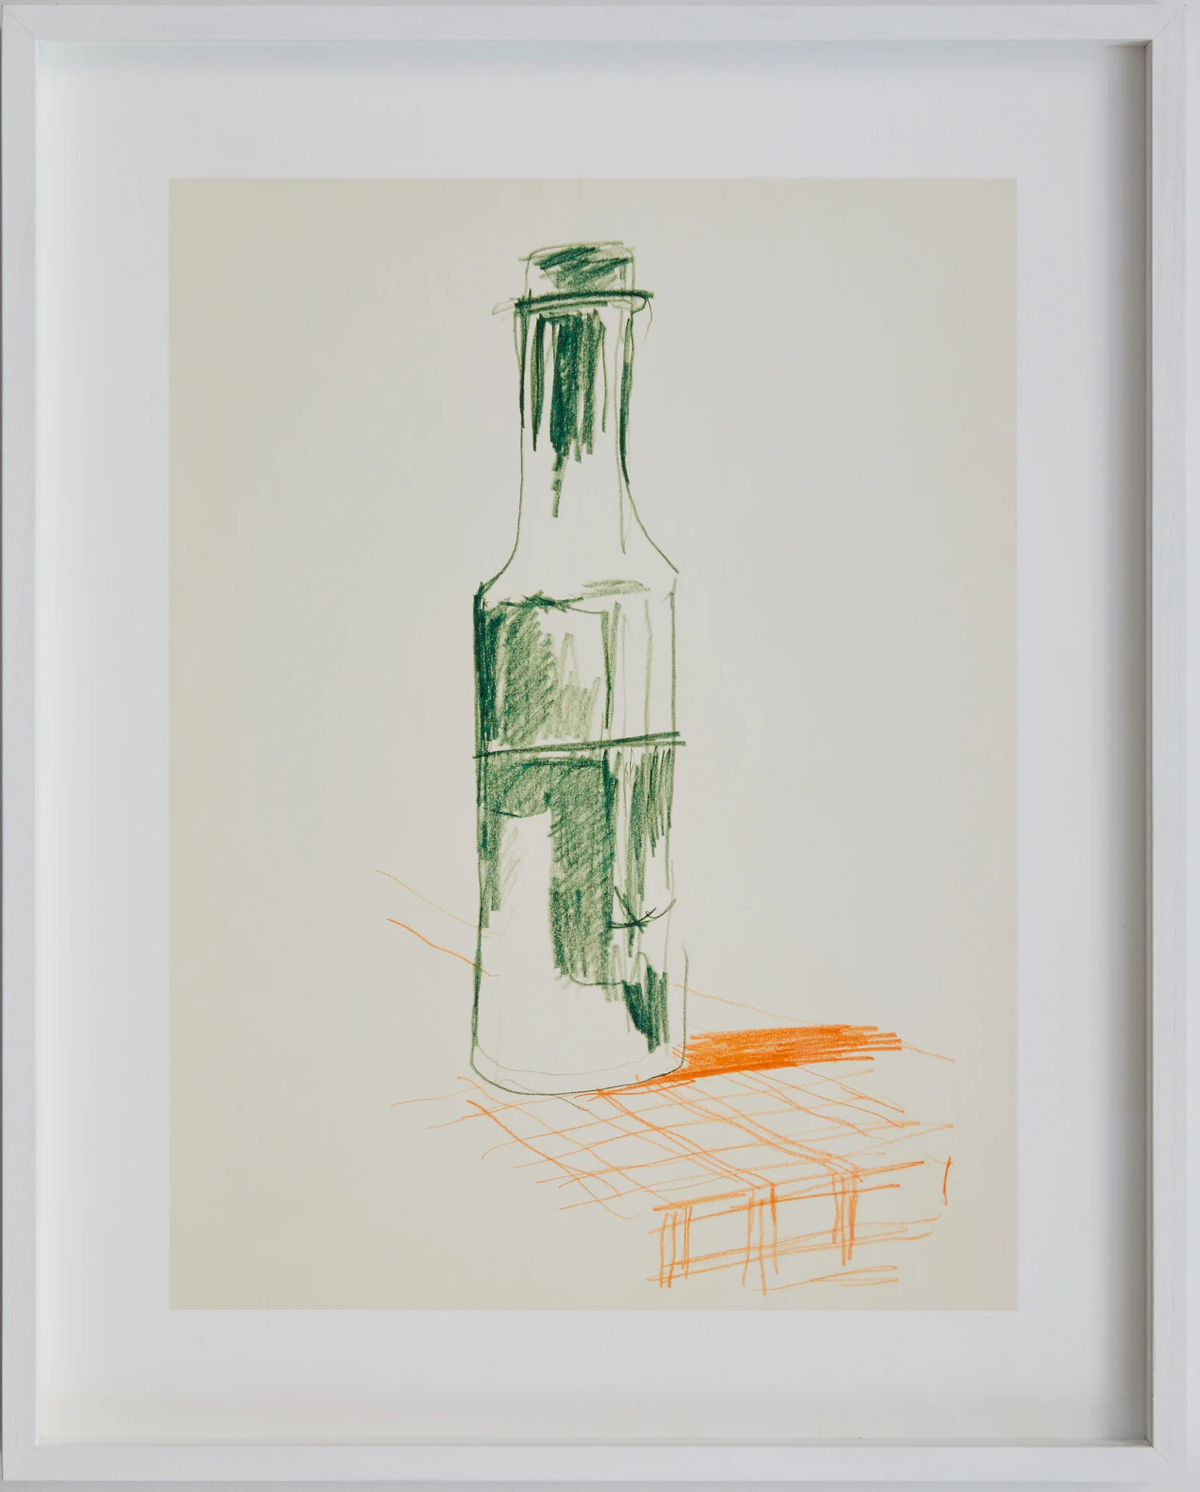 Studio Life 01 Bottle gerahmt in Grün / Orange präsentiert im Onlineshop von KAQTU Design AG. Bild ist von Paper Collective